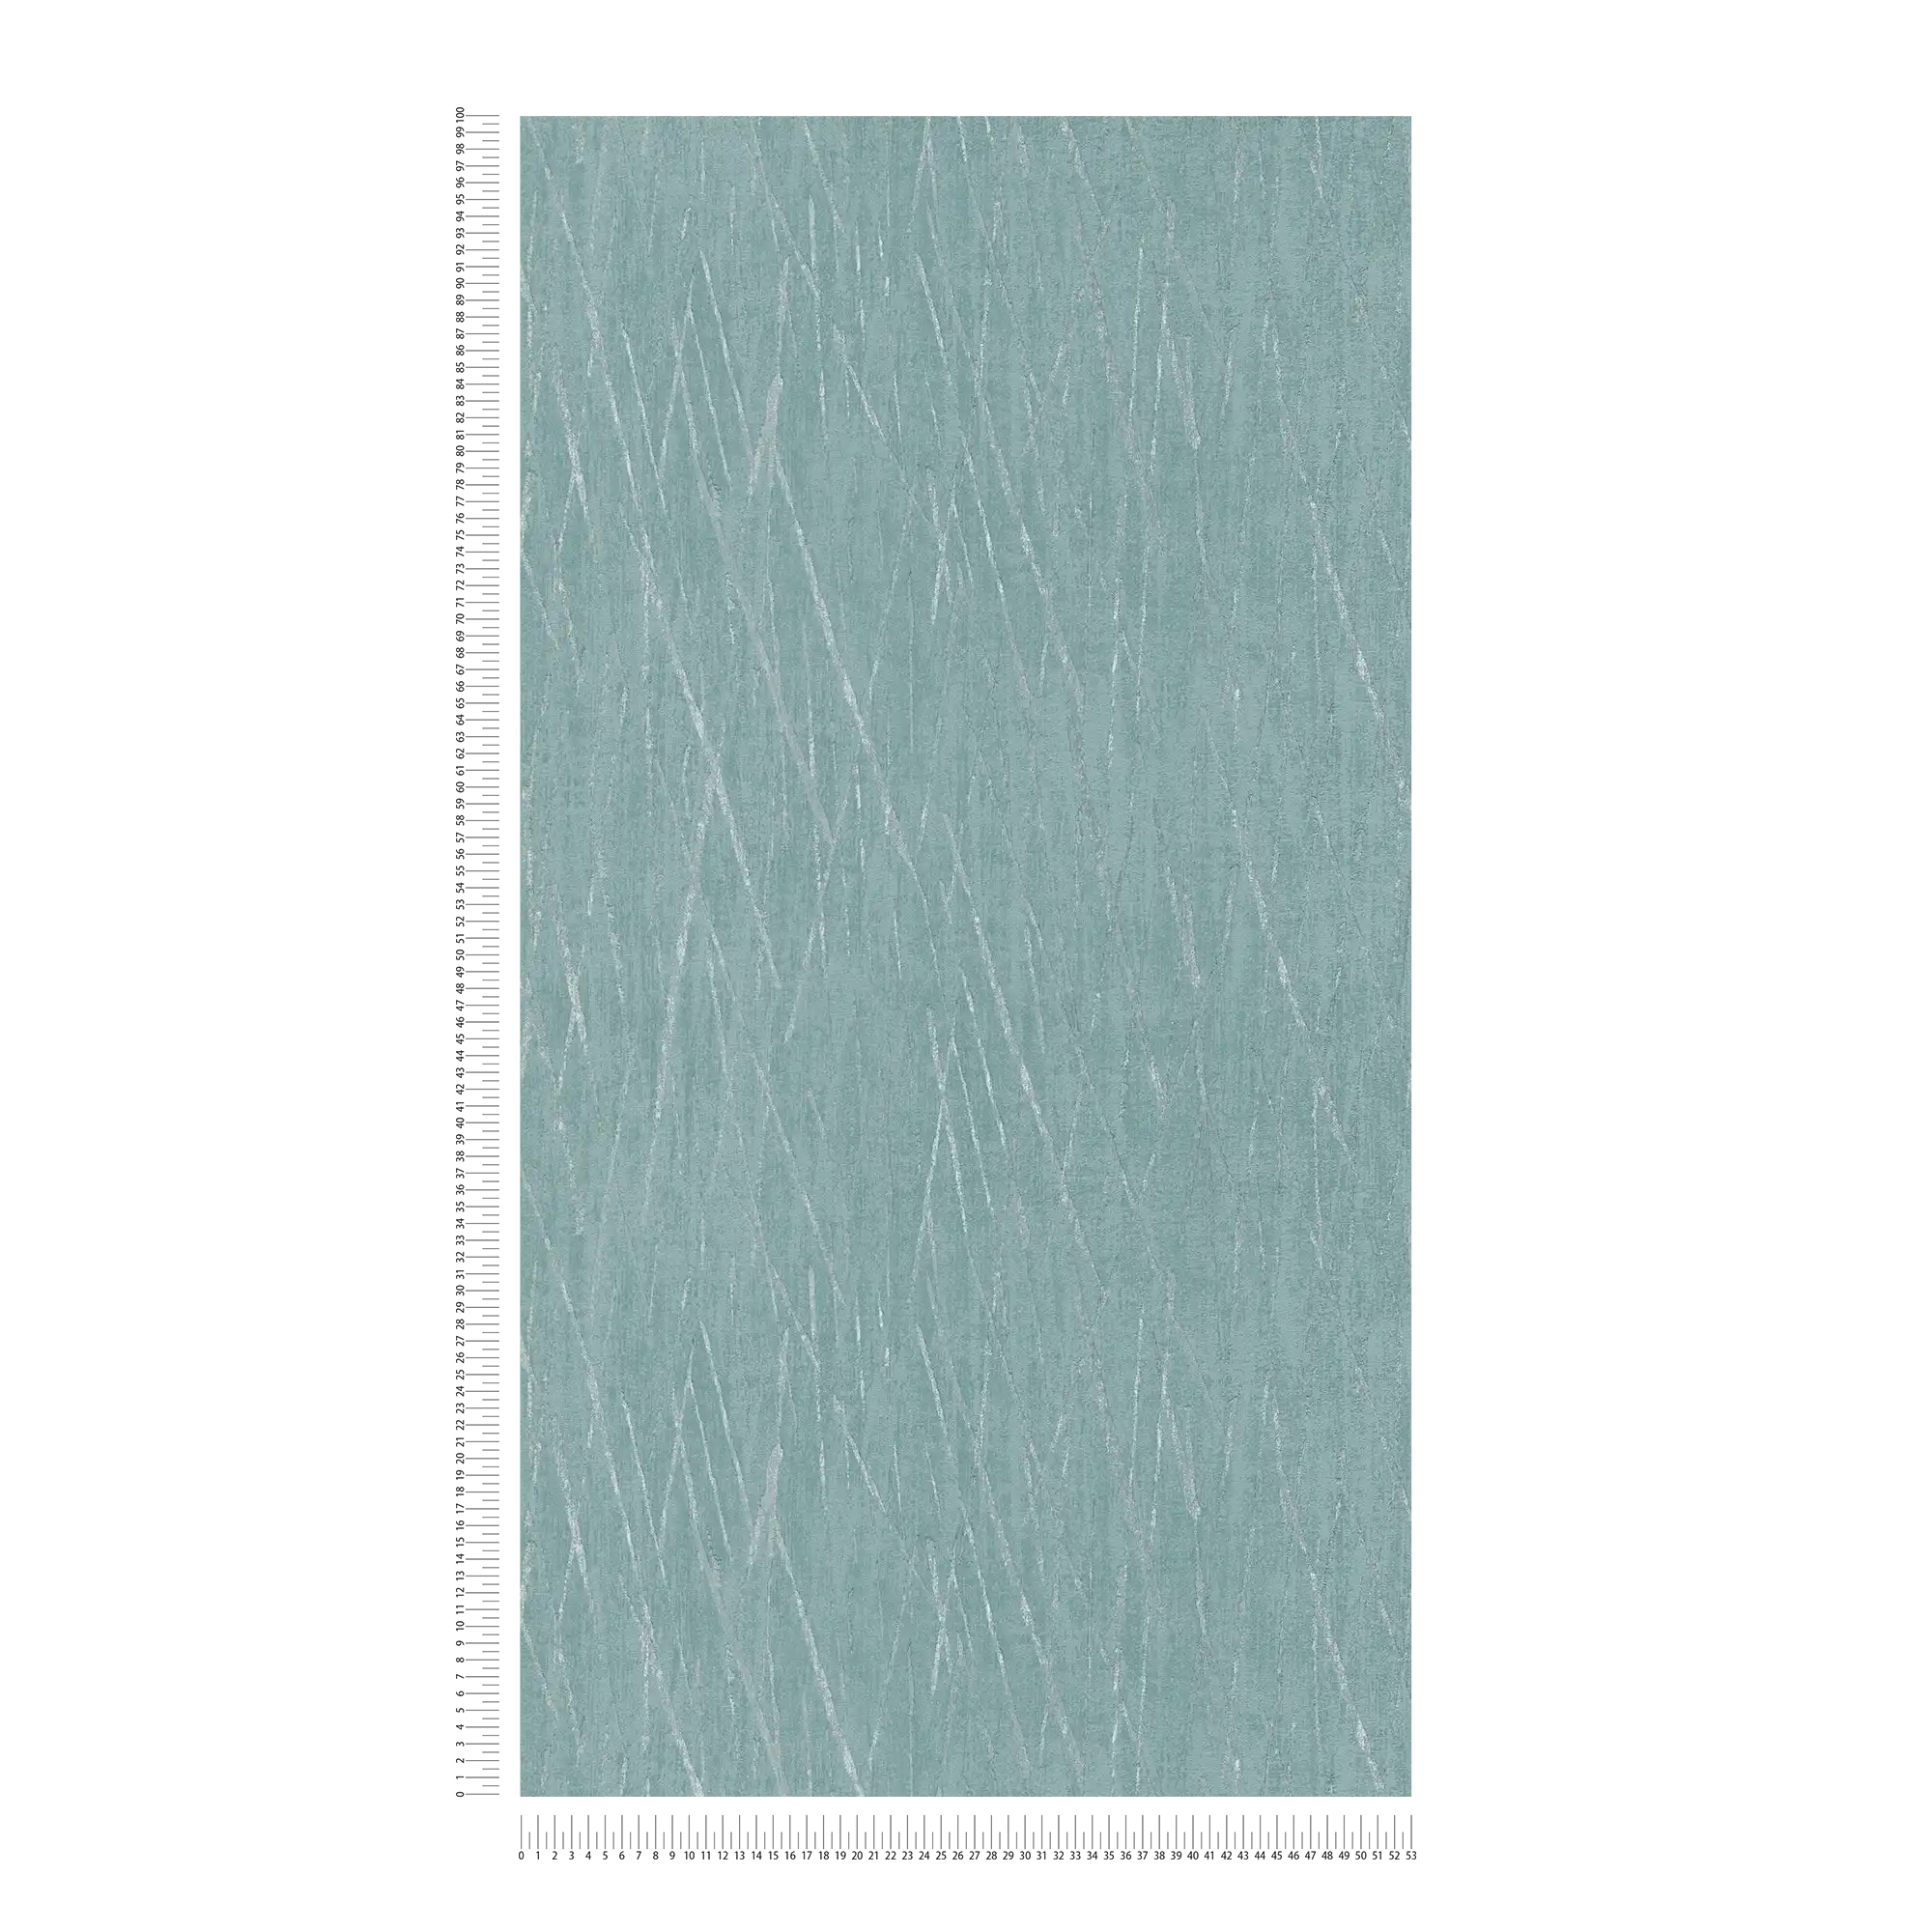             Papel pintado con textura y colores metálicos - azul, verde, plata
        